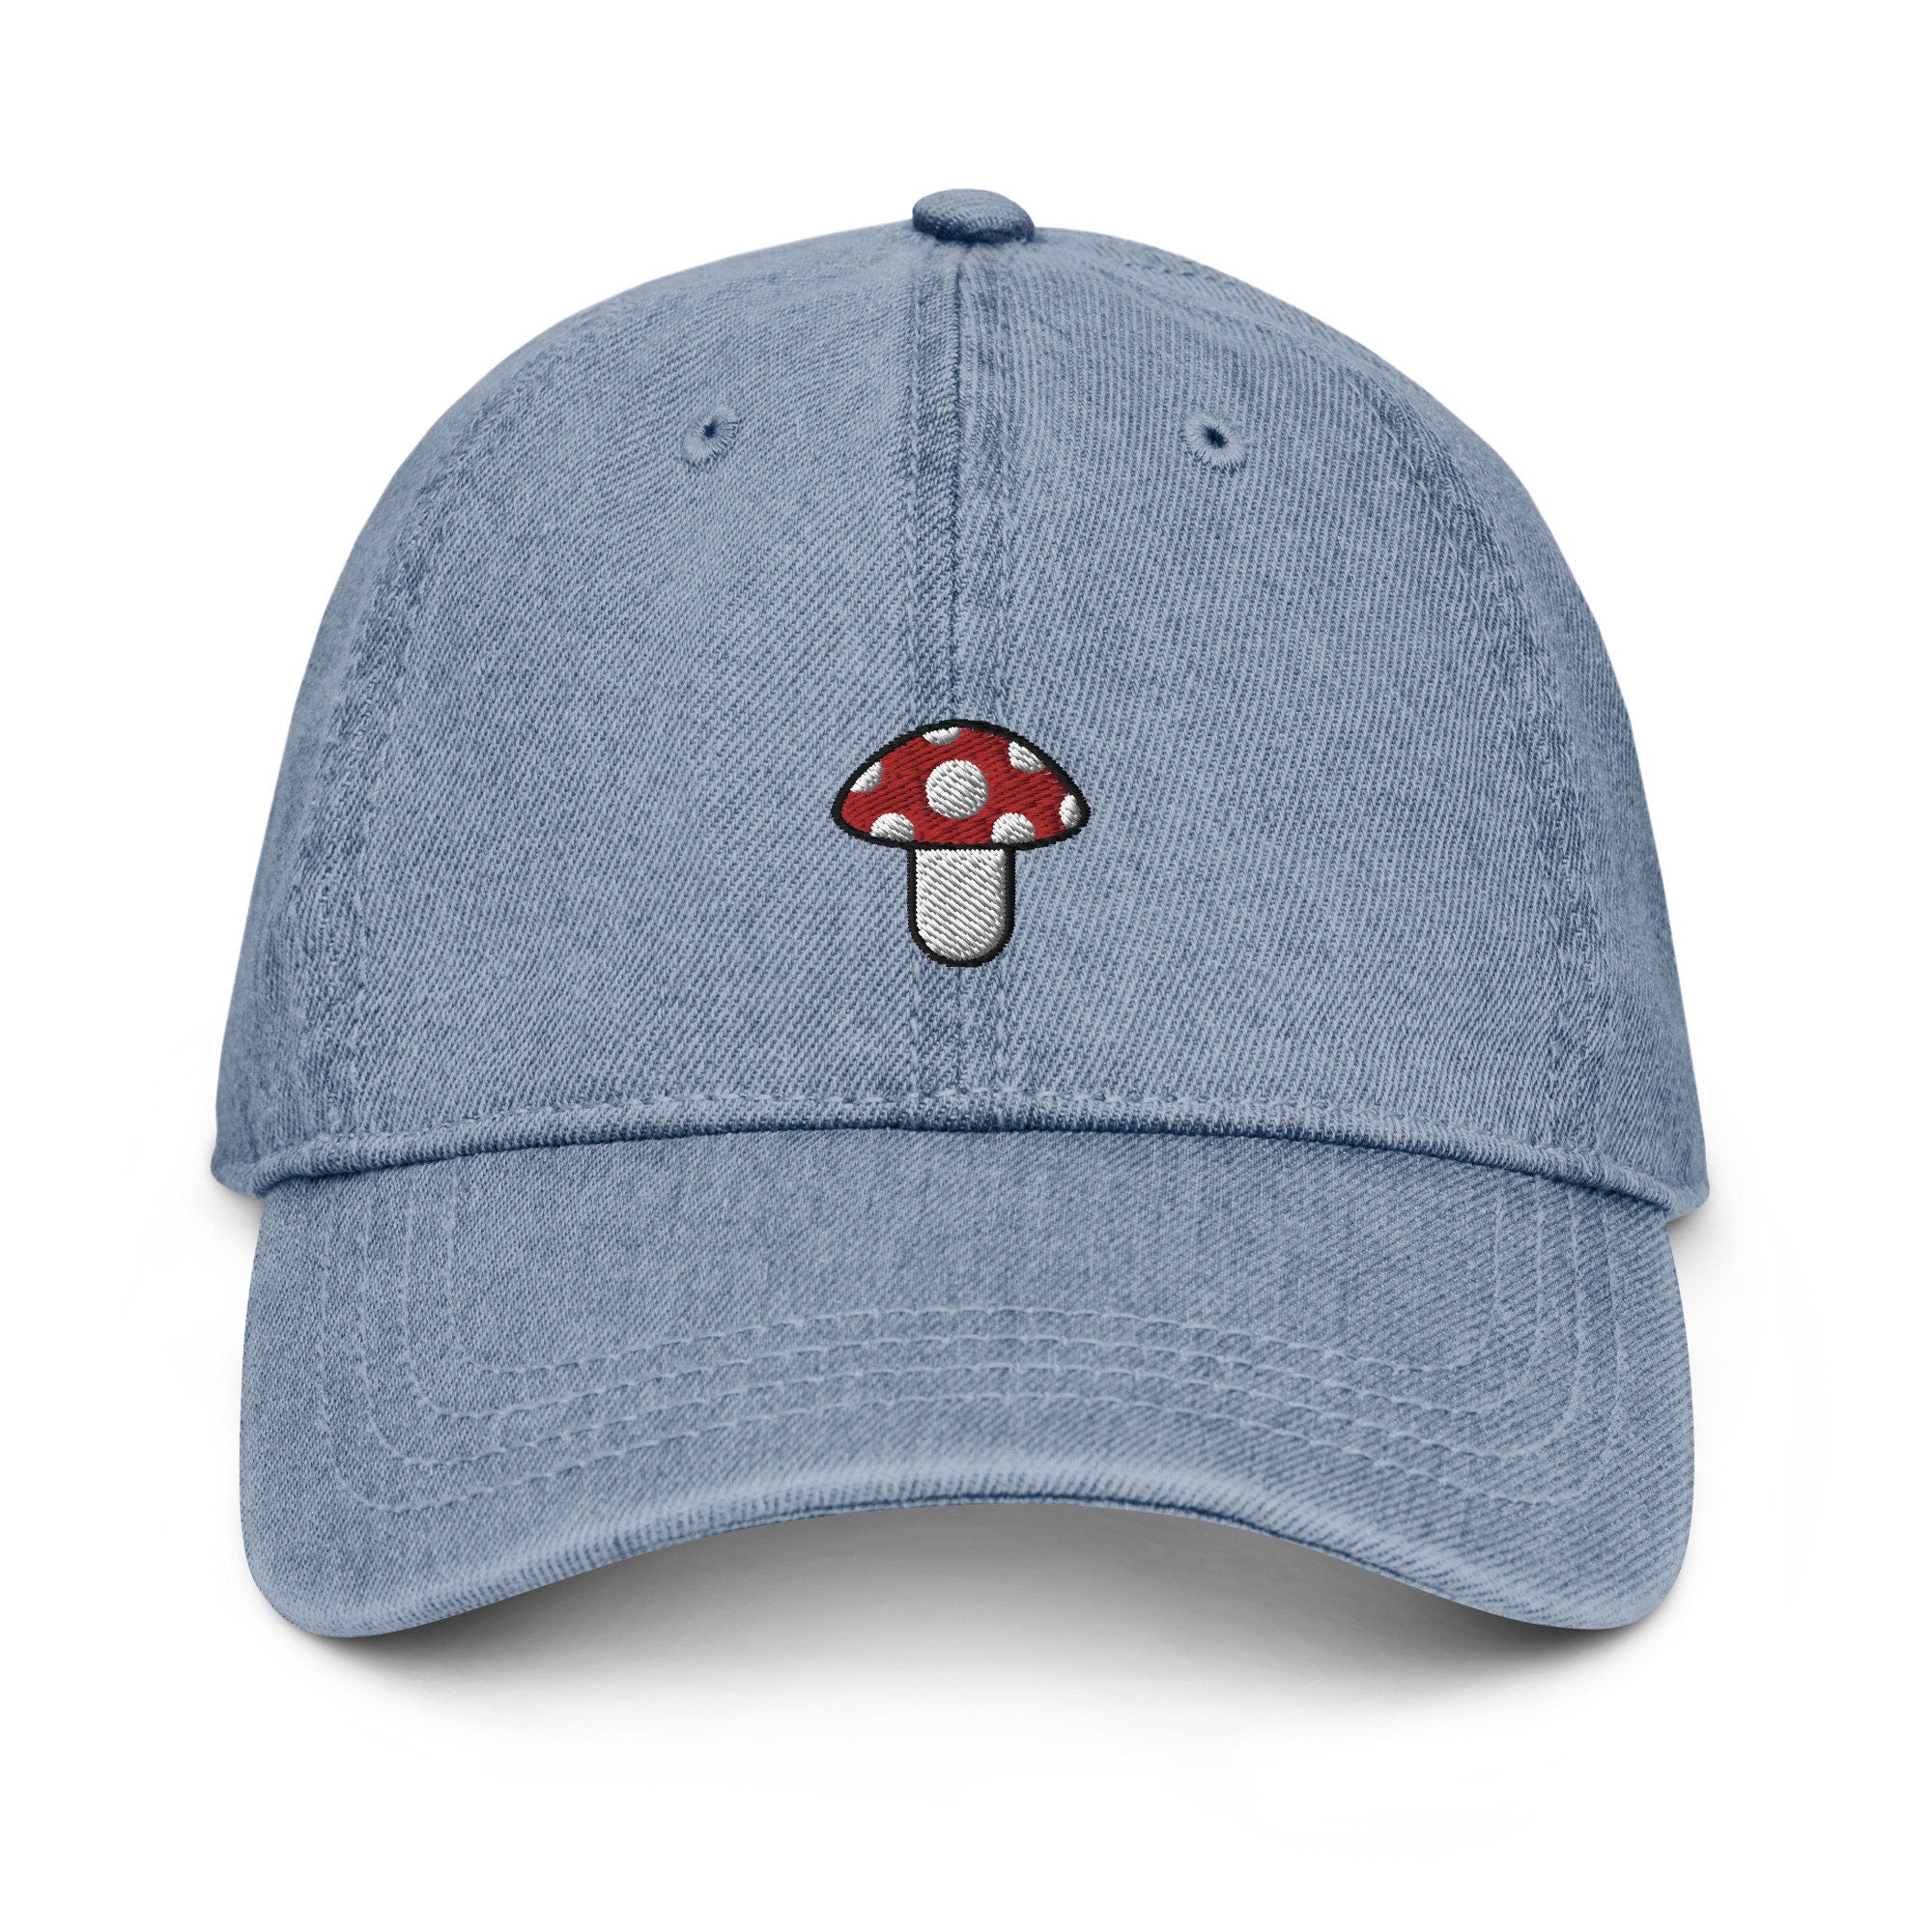 Mushroom Denim Hat, Premium Embroidered Denim Cap, Hat Embroidery Gift - Multiple Colors